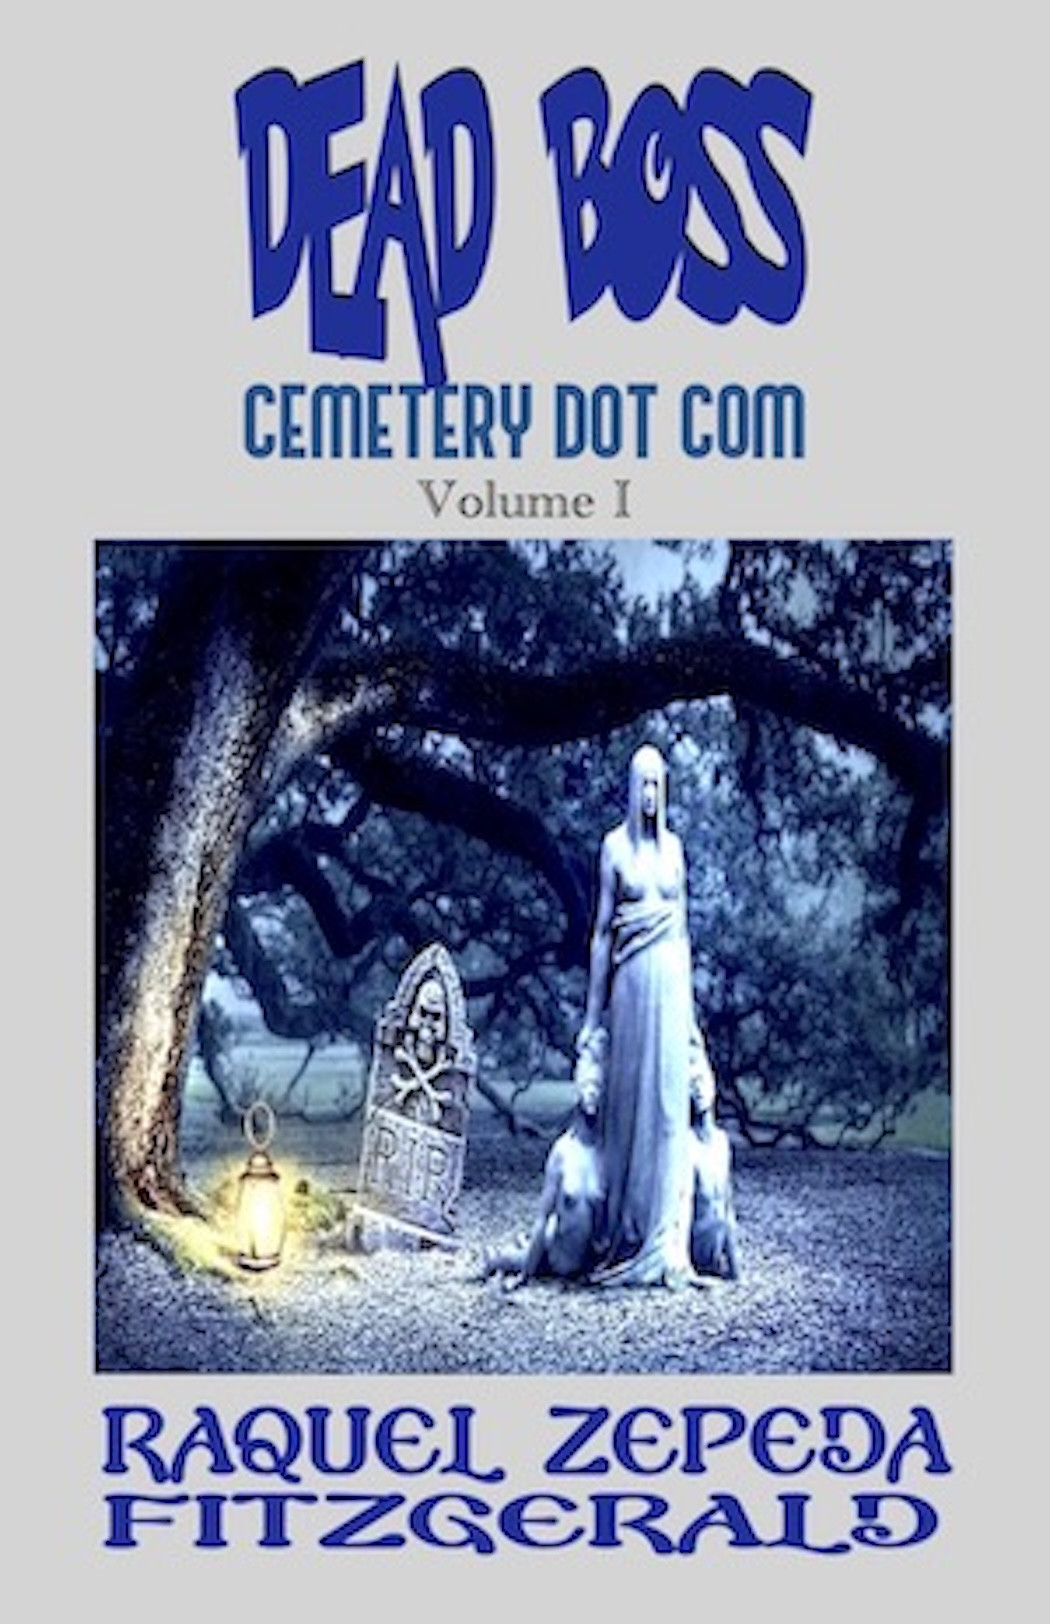 Dead Boss Cemetery Dot Com, Volume I